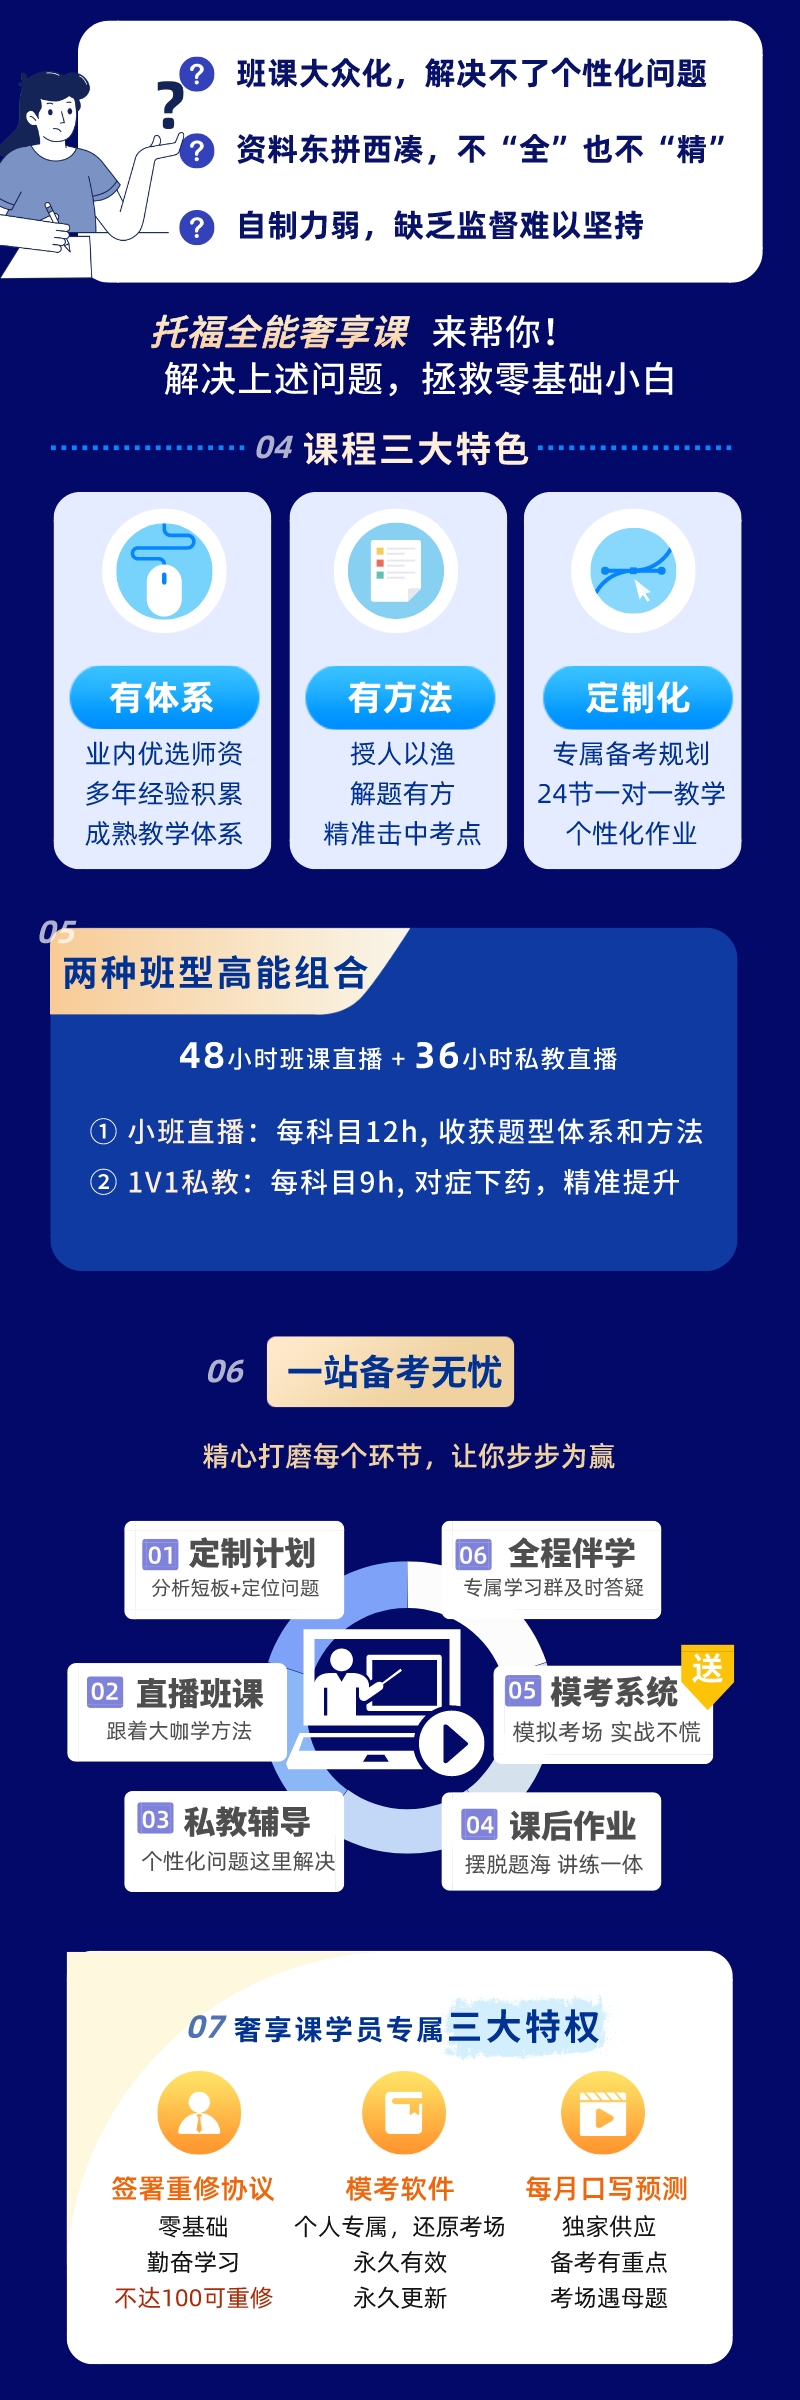 https://simg01.gaodunwangxiao.com/uploadfiles/product-center/202303/14/b3c76_20230314105631.jpeg